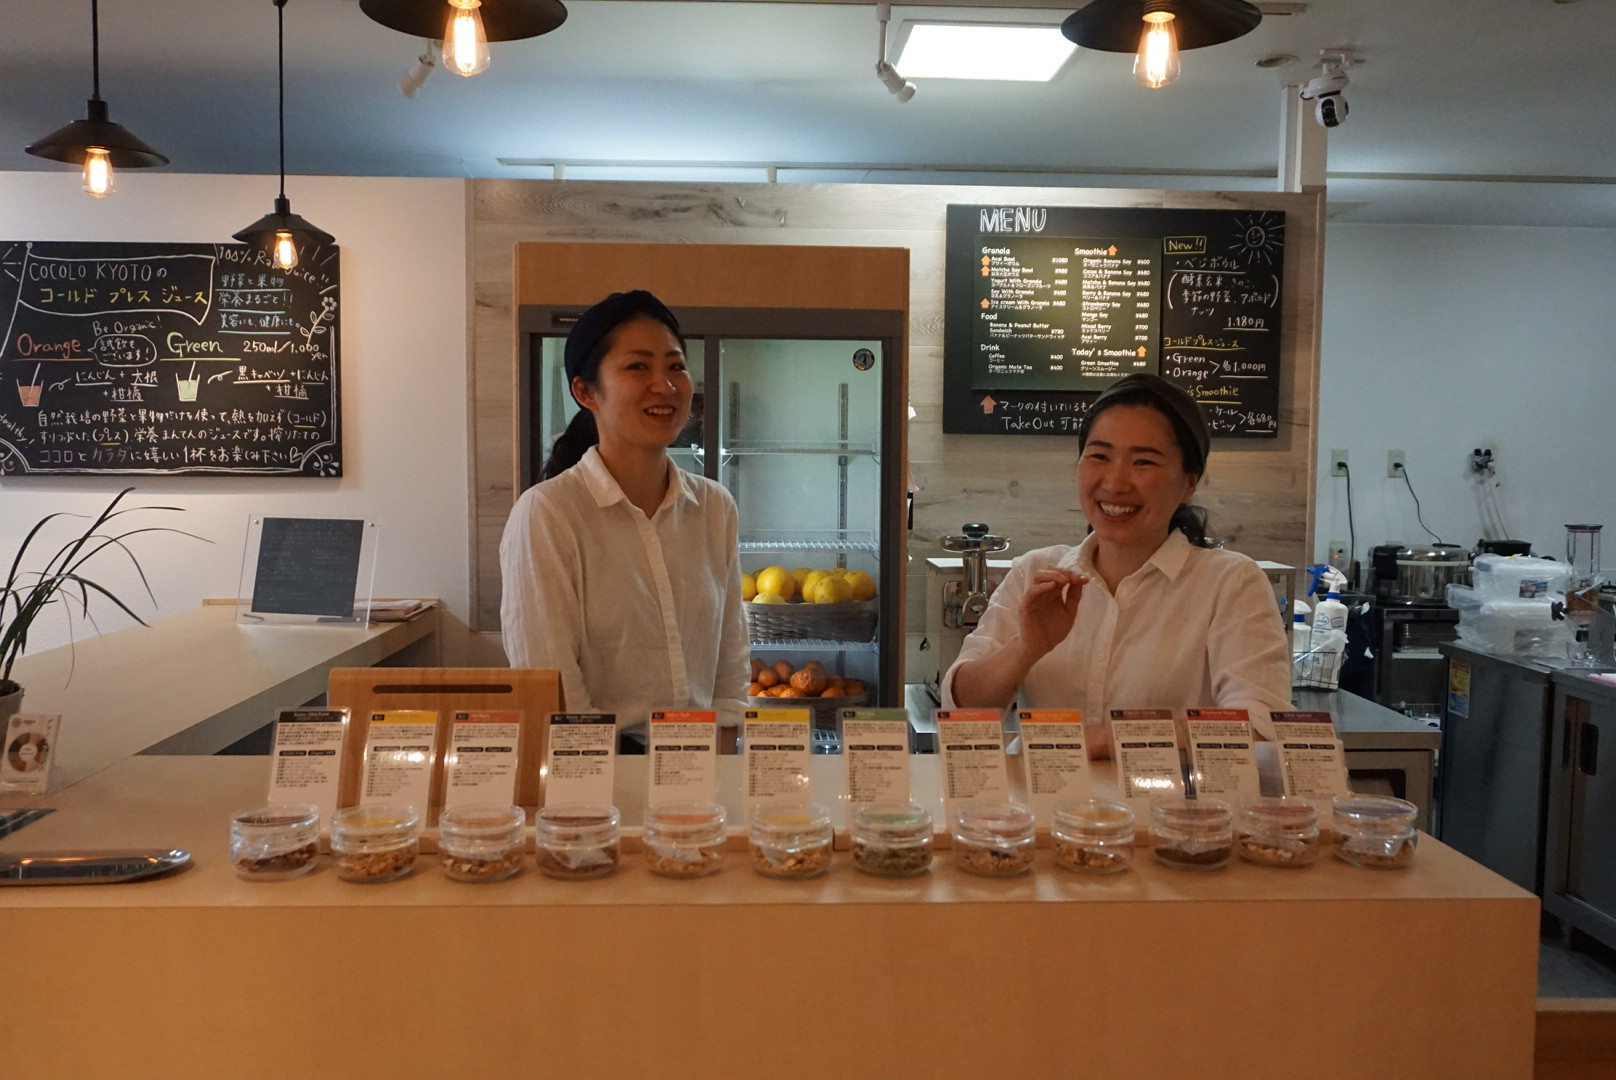 COCOLO KYOTO -Japanese style granola shop & cafe- image03